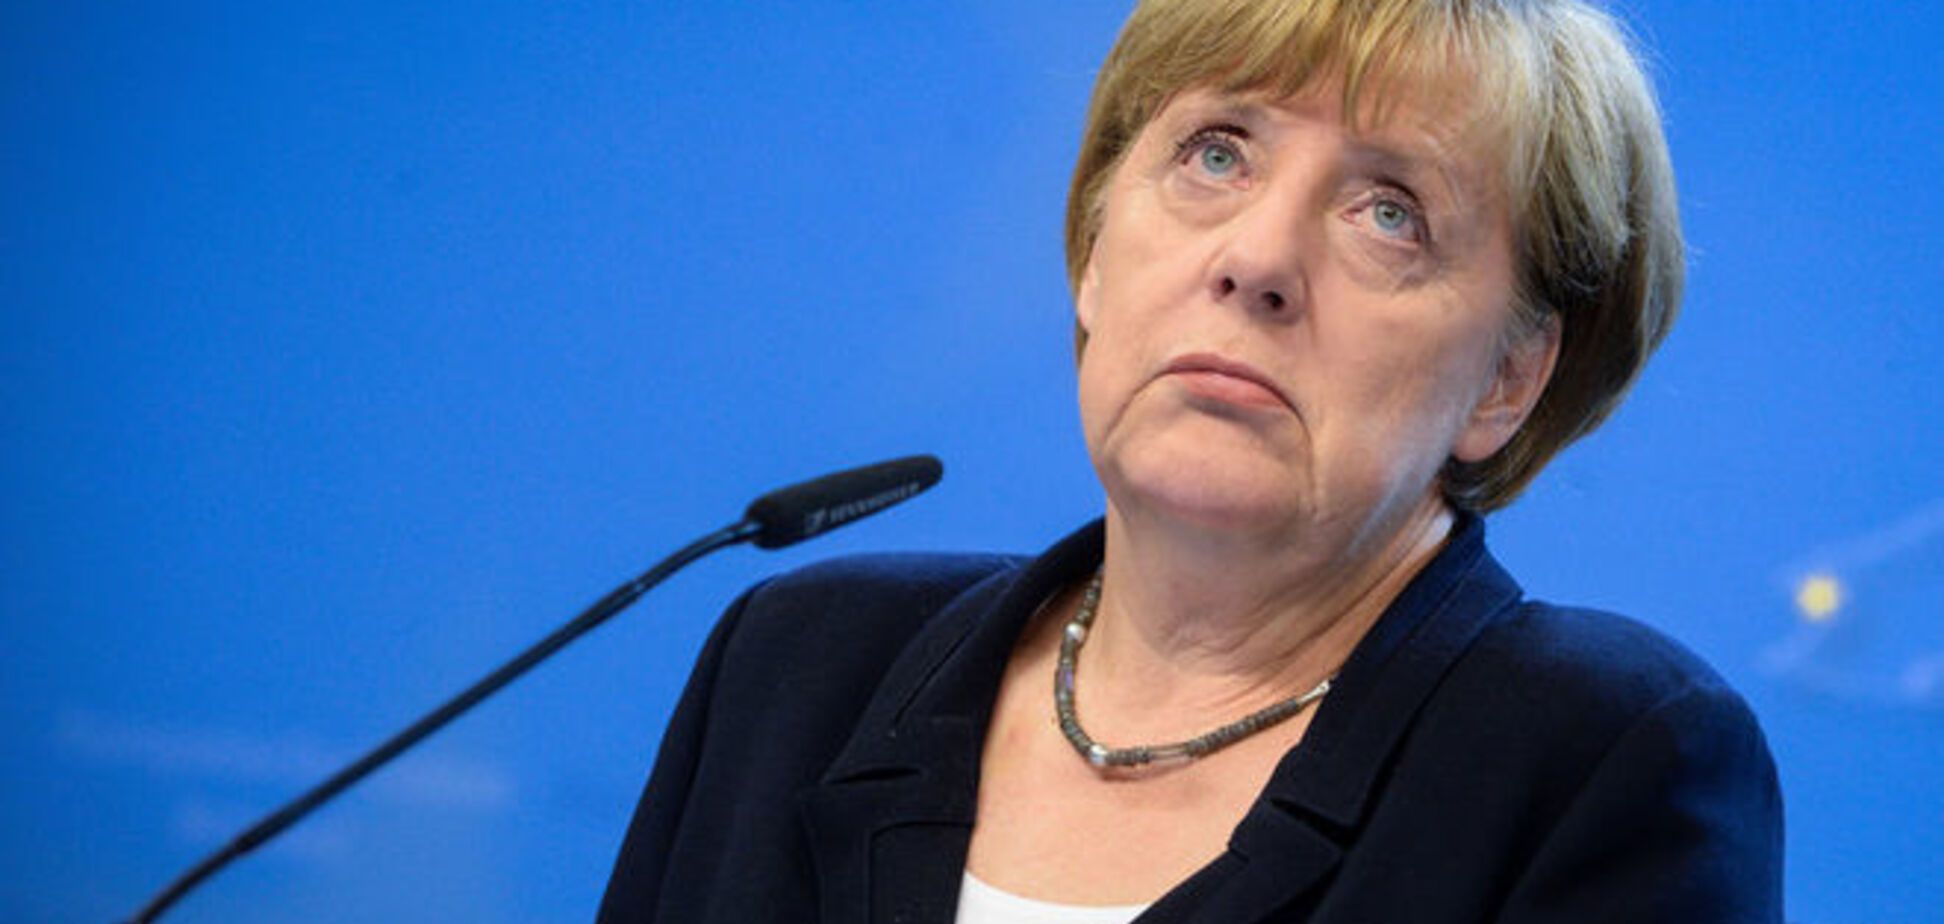 Меркель отметила 61-летие: неординарные фото самой влиятельной женщины мира